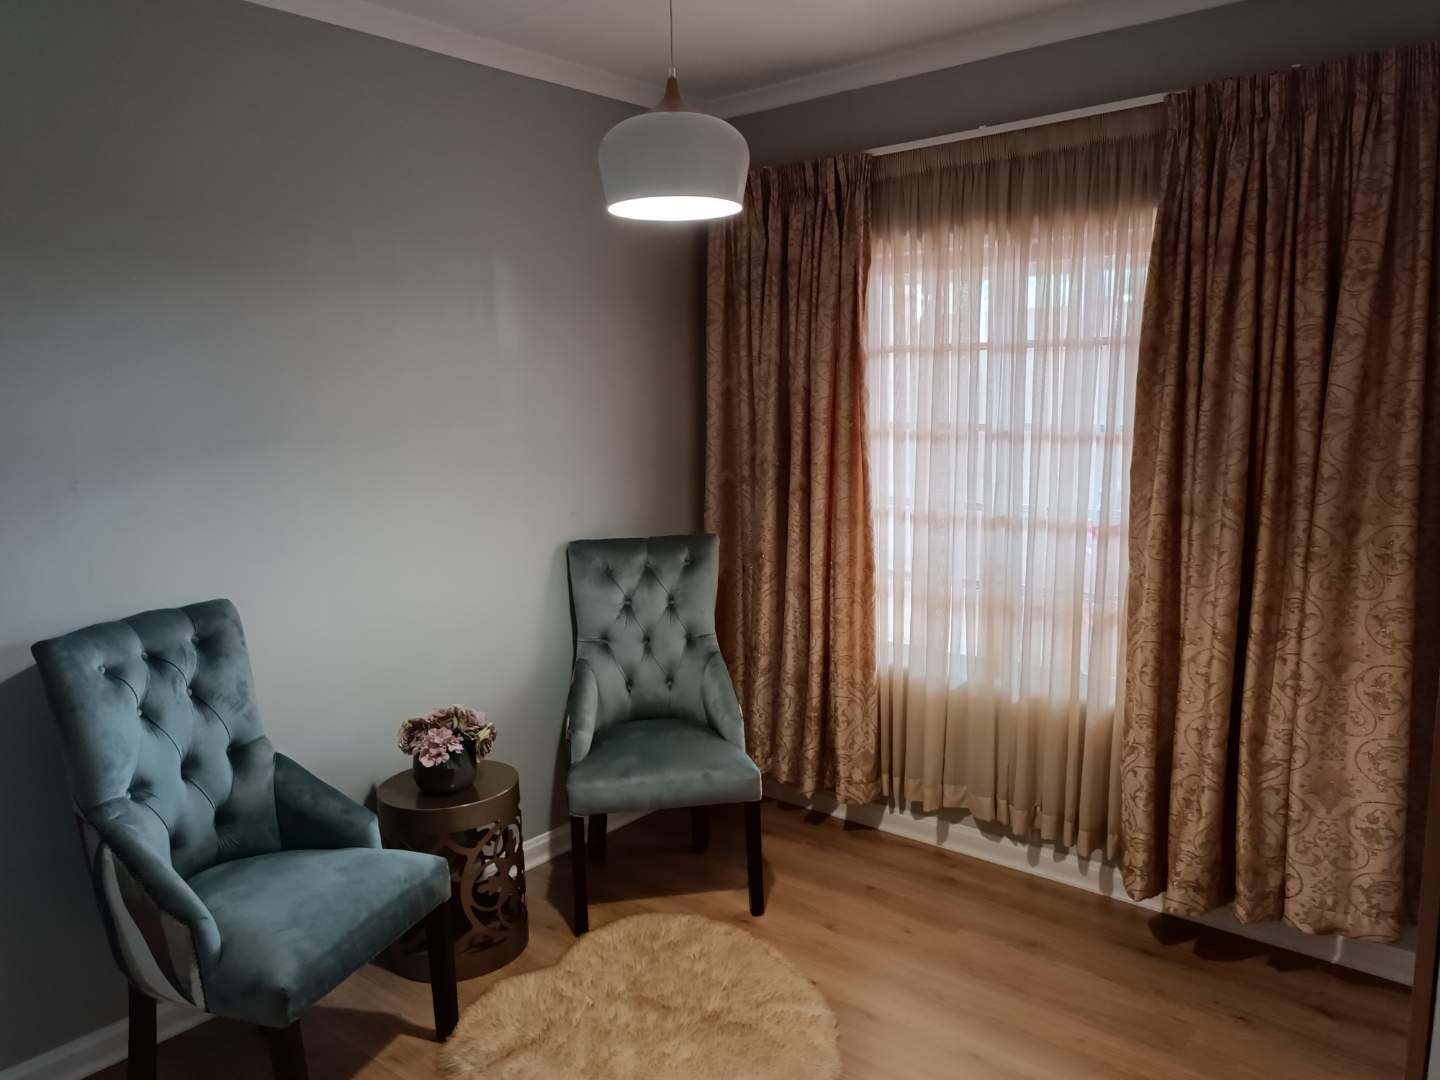 5 Bedroom Property for Sale in Merrivale KwaZulu-Natal